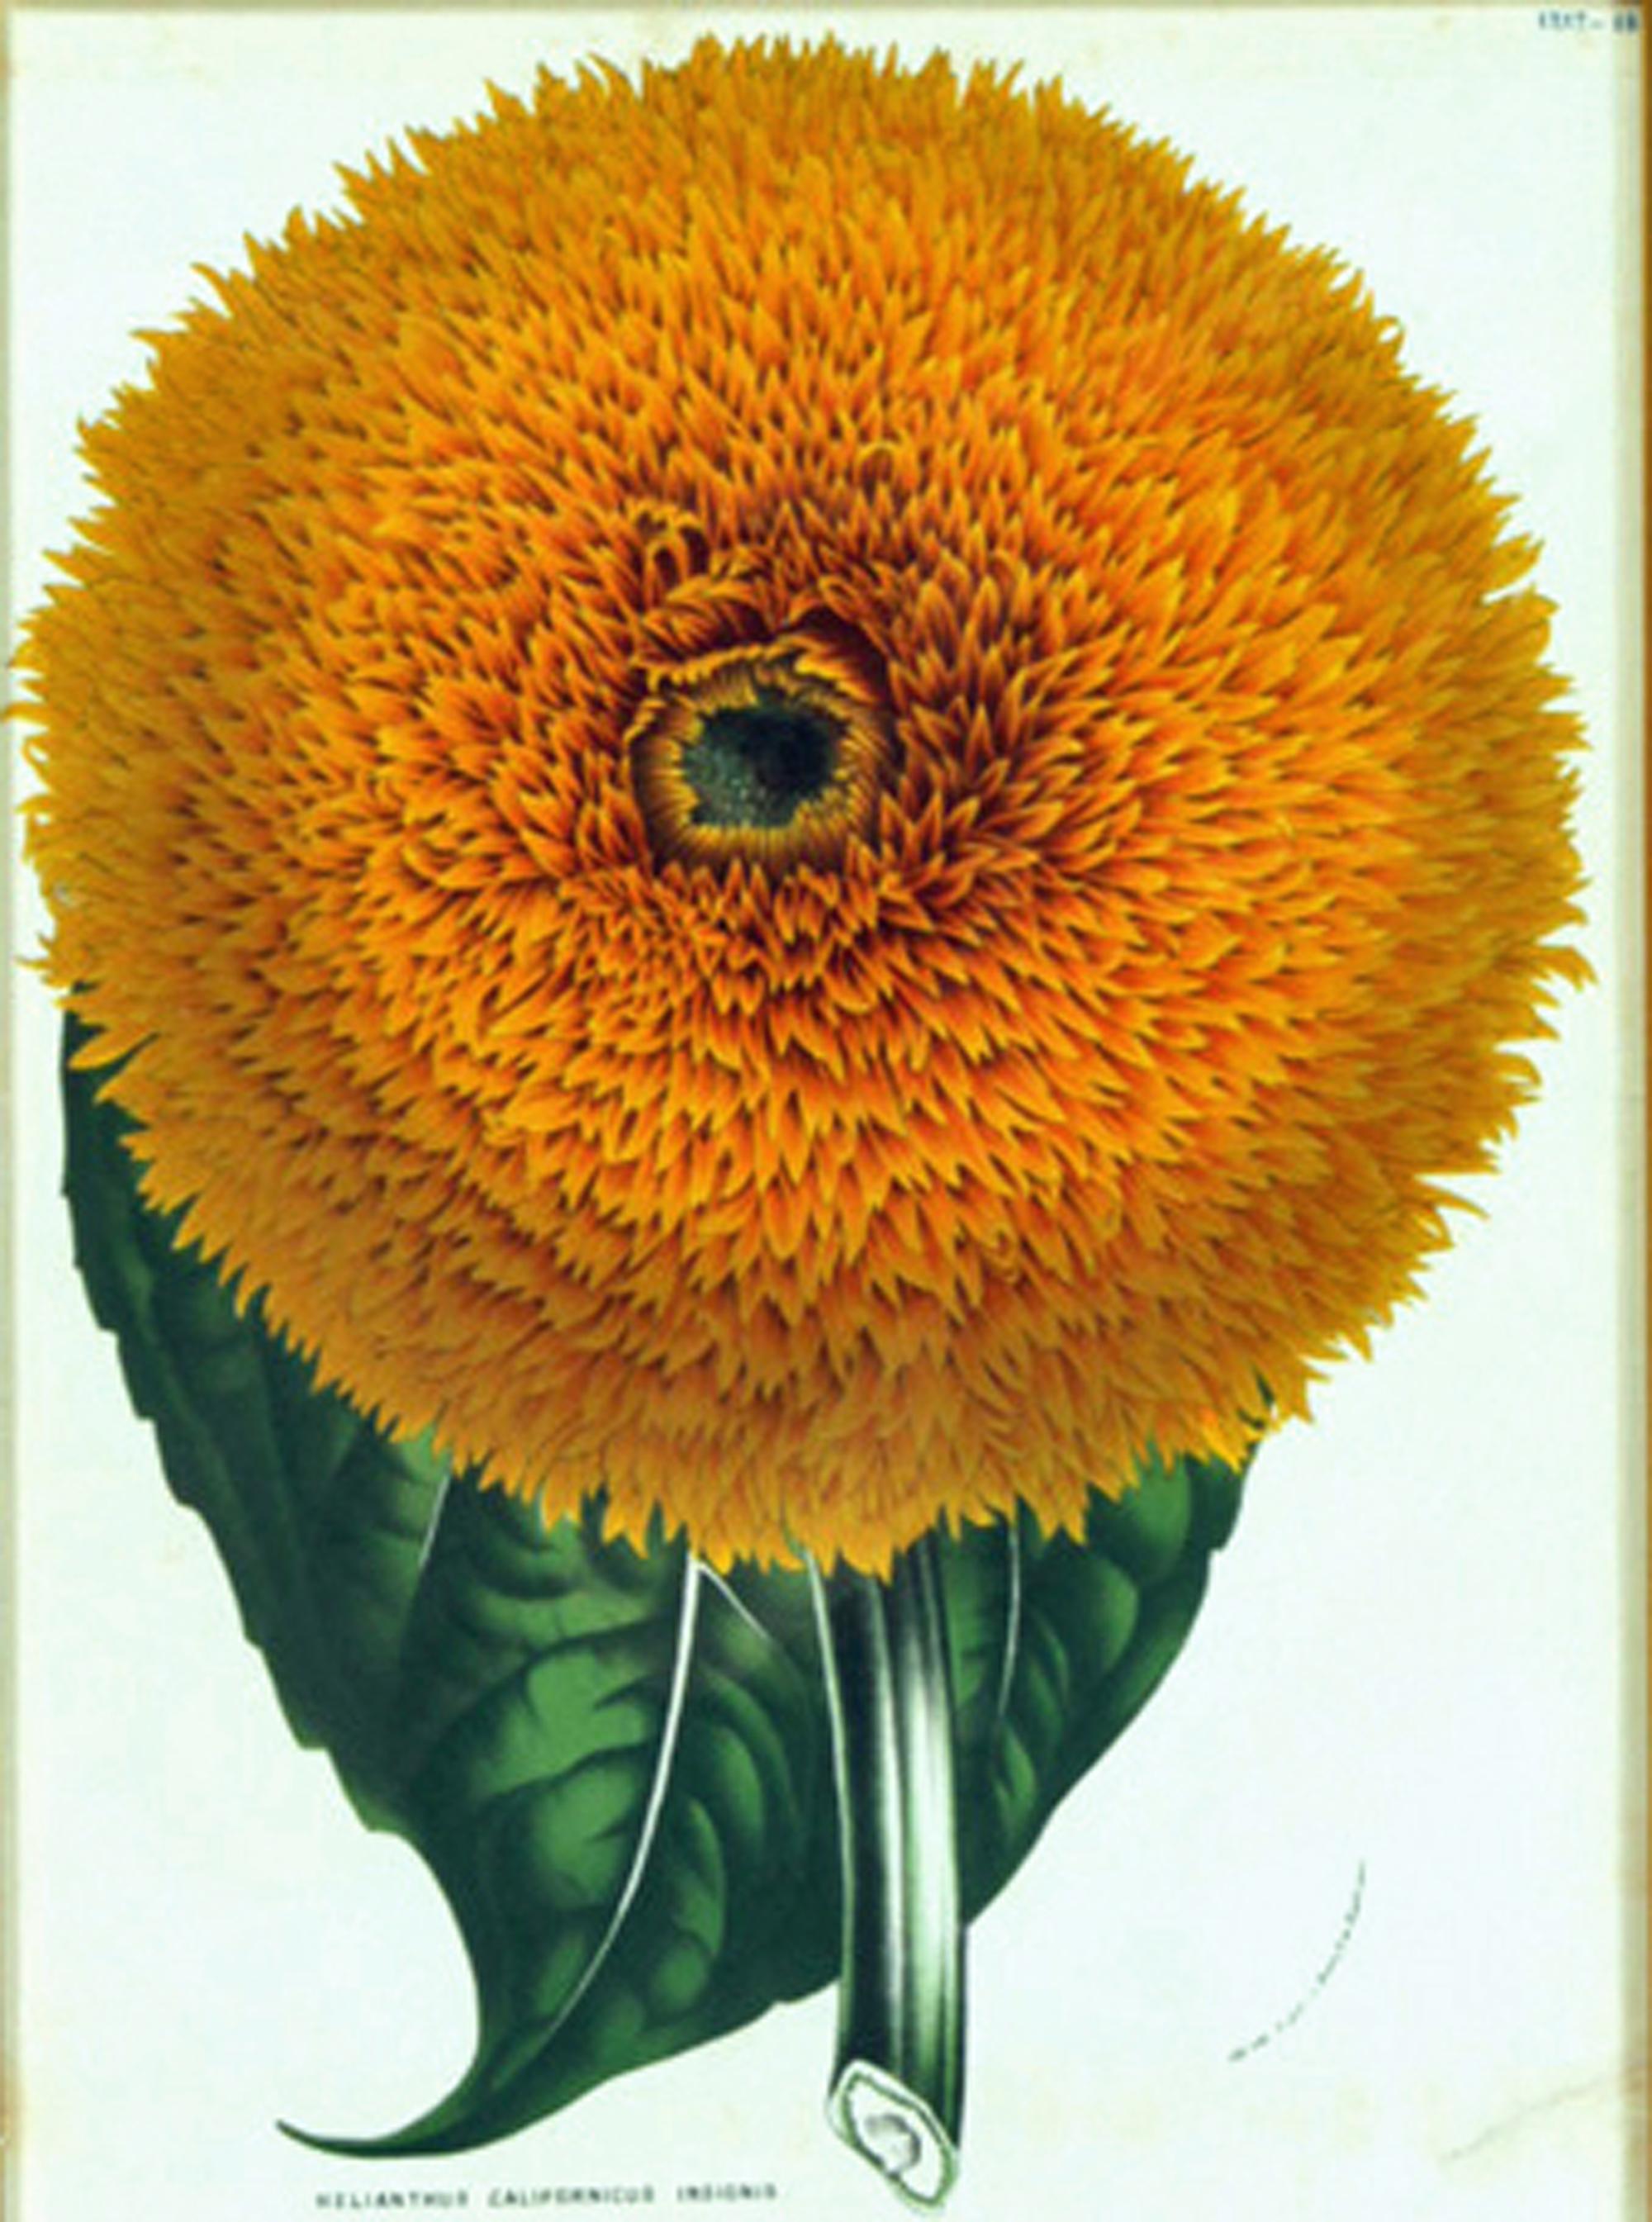 Gravure botanique de Helianthus Californicus Insignis,
Le tournesol californien,
Flore des serres et des jardins de l'Europe,
Louis van Houtte. (1810-1876)

L'impression encadrée représente le tournesol californien.  La fleur est grande et remplit